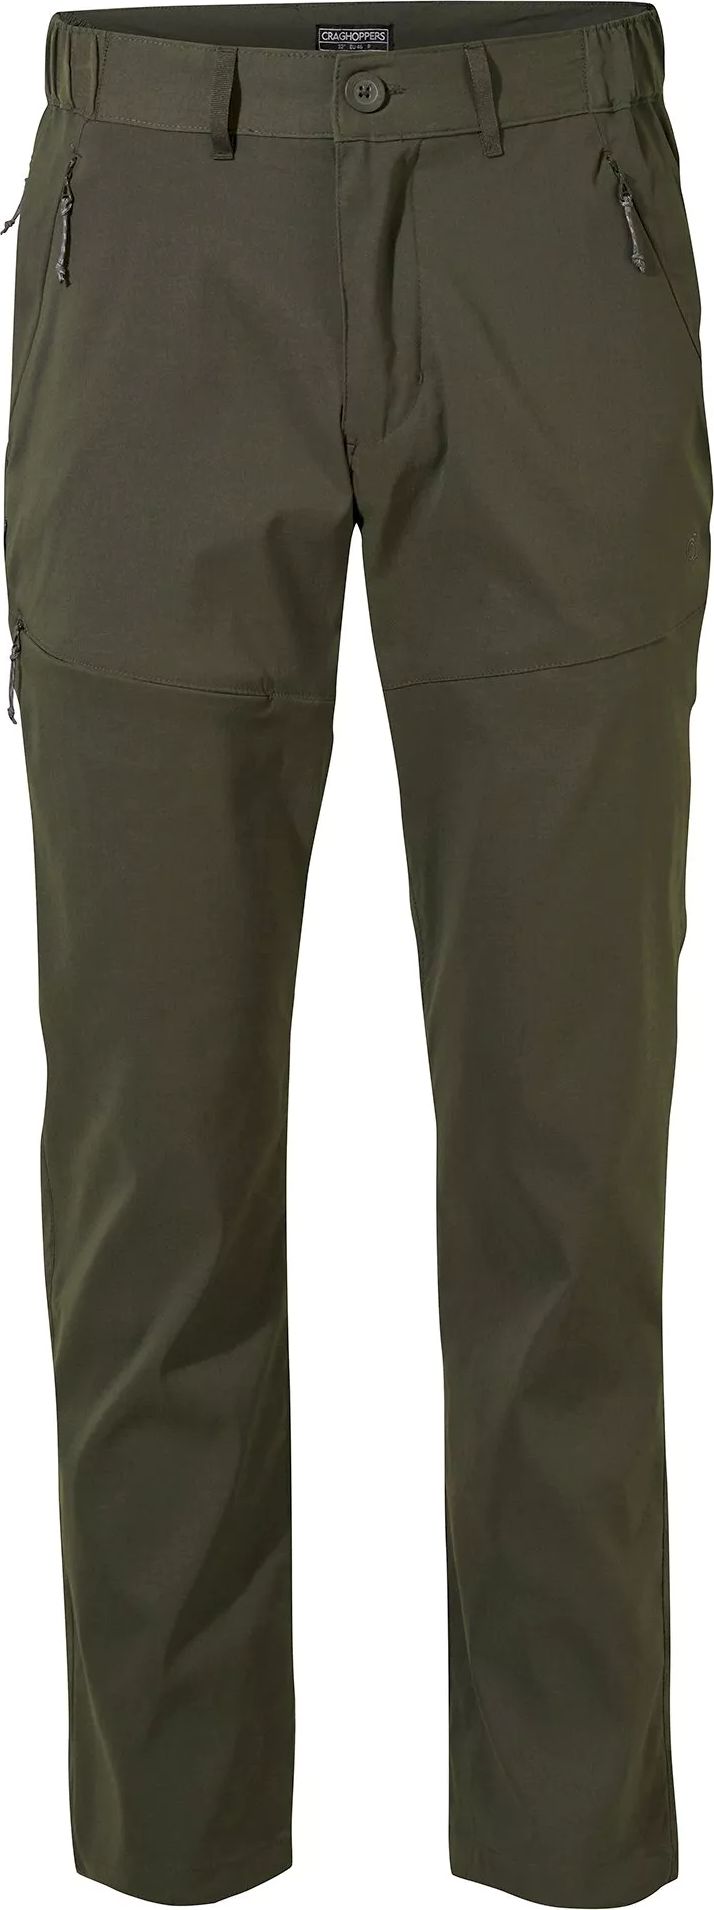 Men's Kiwi Pro II Trousers Dark Khaki Craghoppers